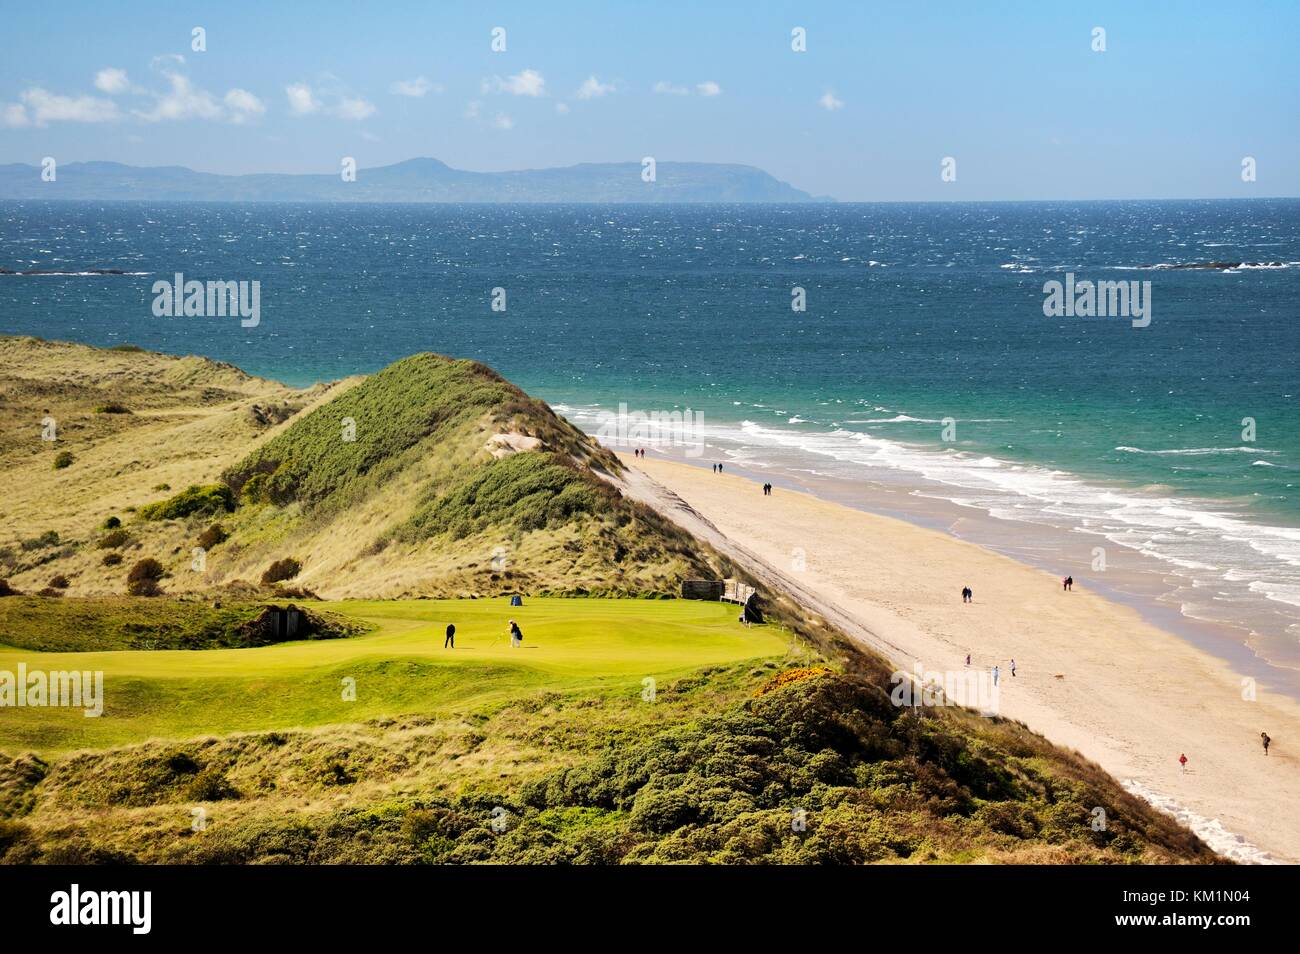 El Club de Golf Royal Portrush, Irlanda del Norte, Reino Unido. El 5º orificio del Dunluce Links championship course por encima de la playa de rocas blancas Foto de stock